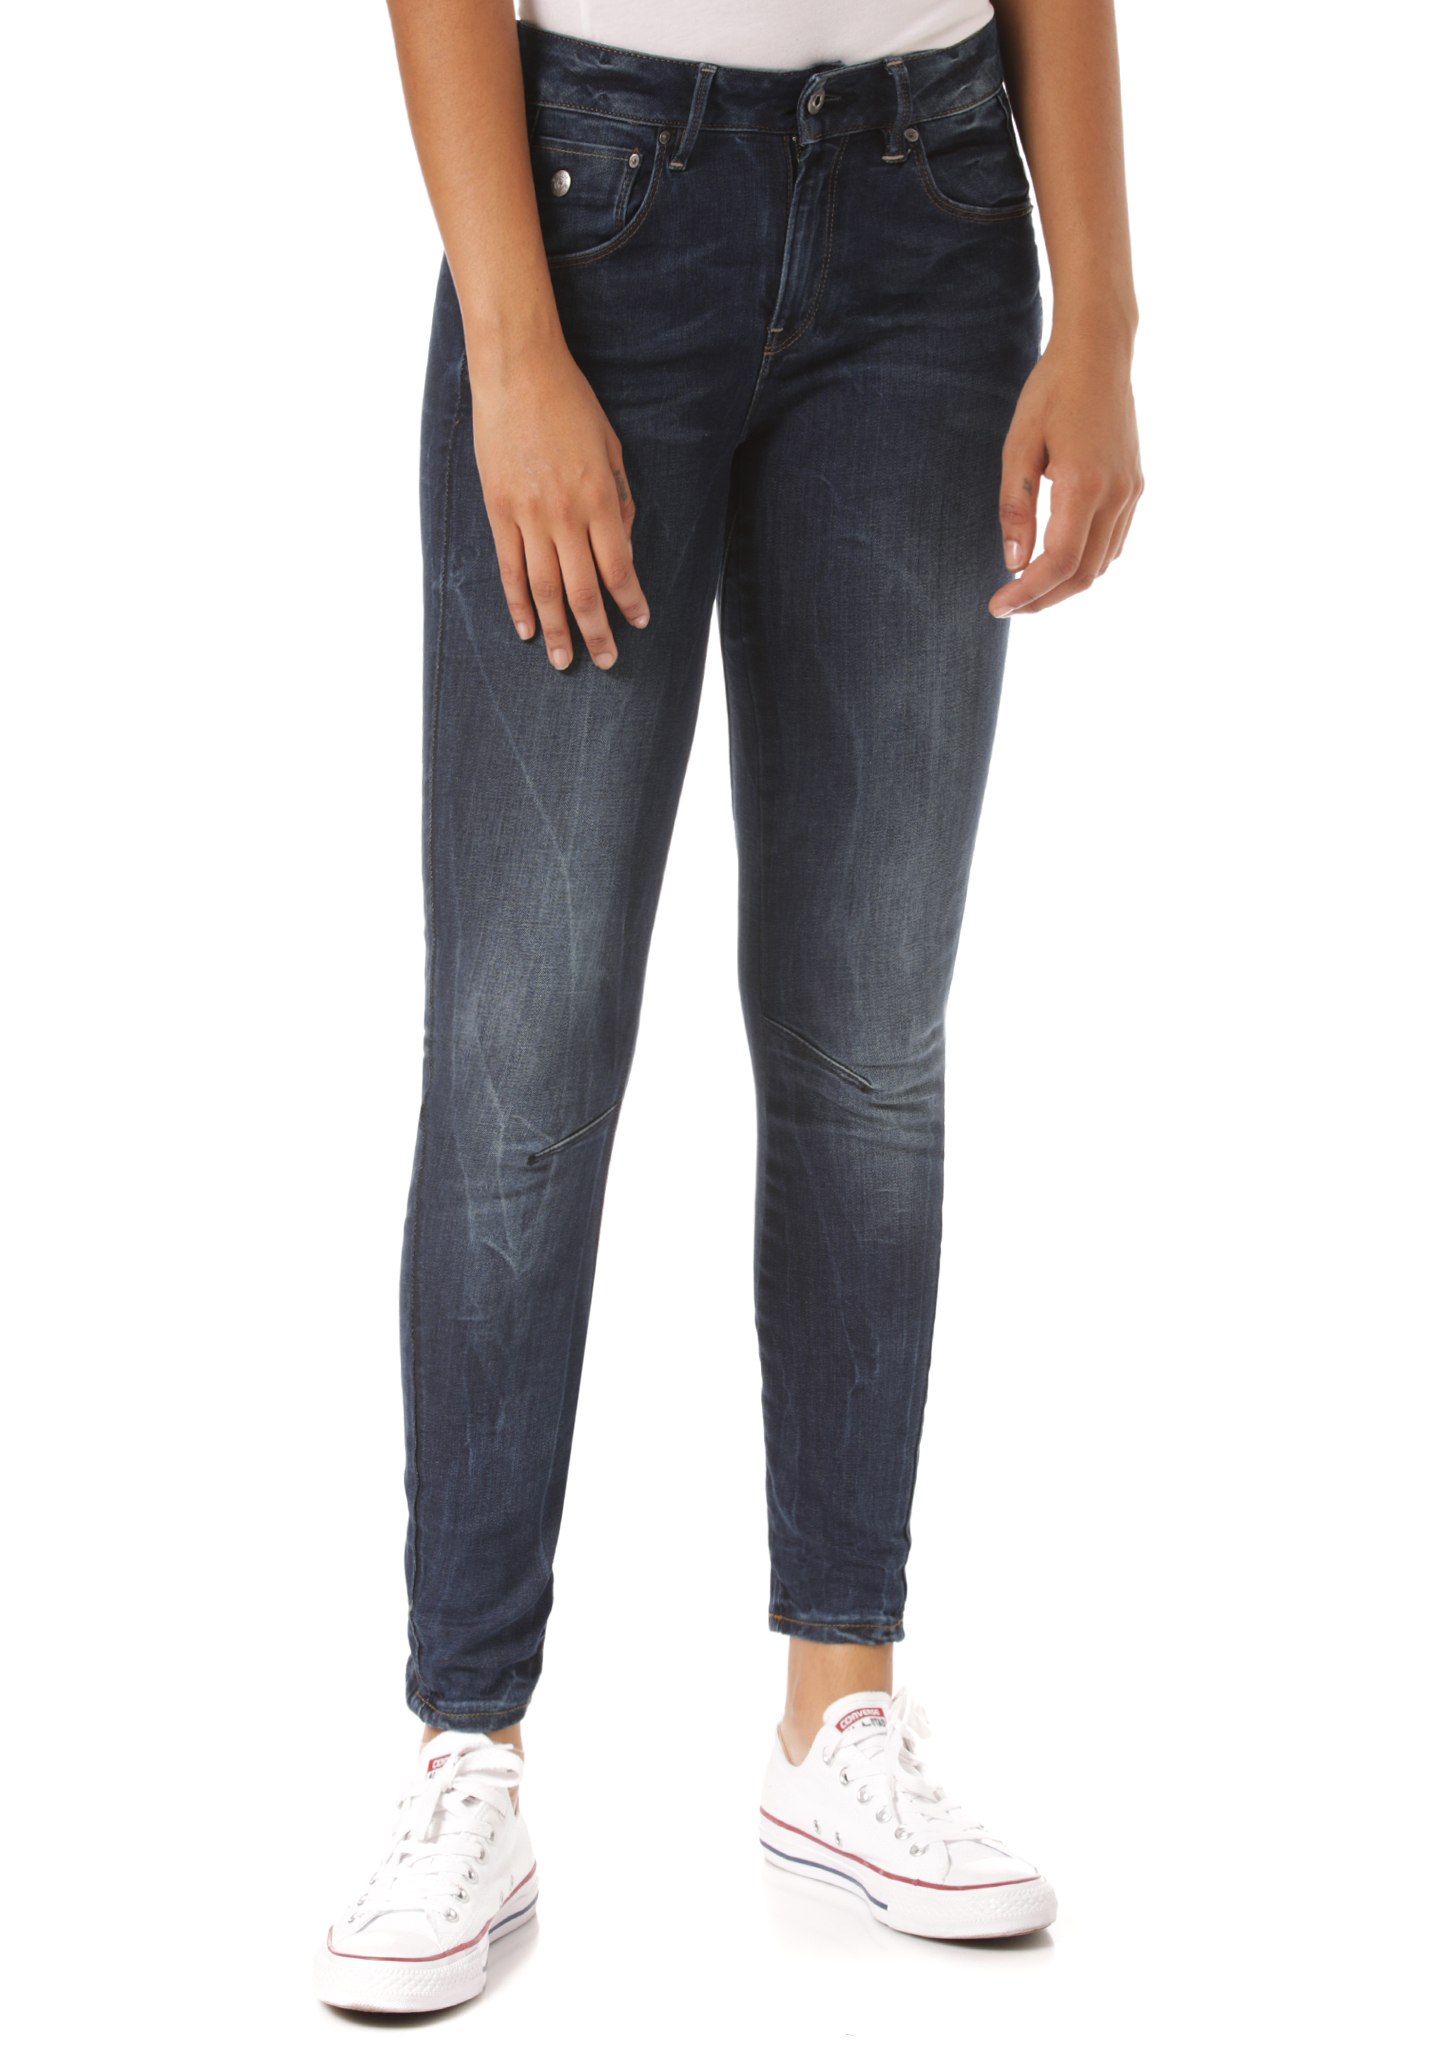 G-Star Arc 3D Mid Skinny Neutro Stretch Skinny Jeans jeans 32/34